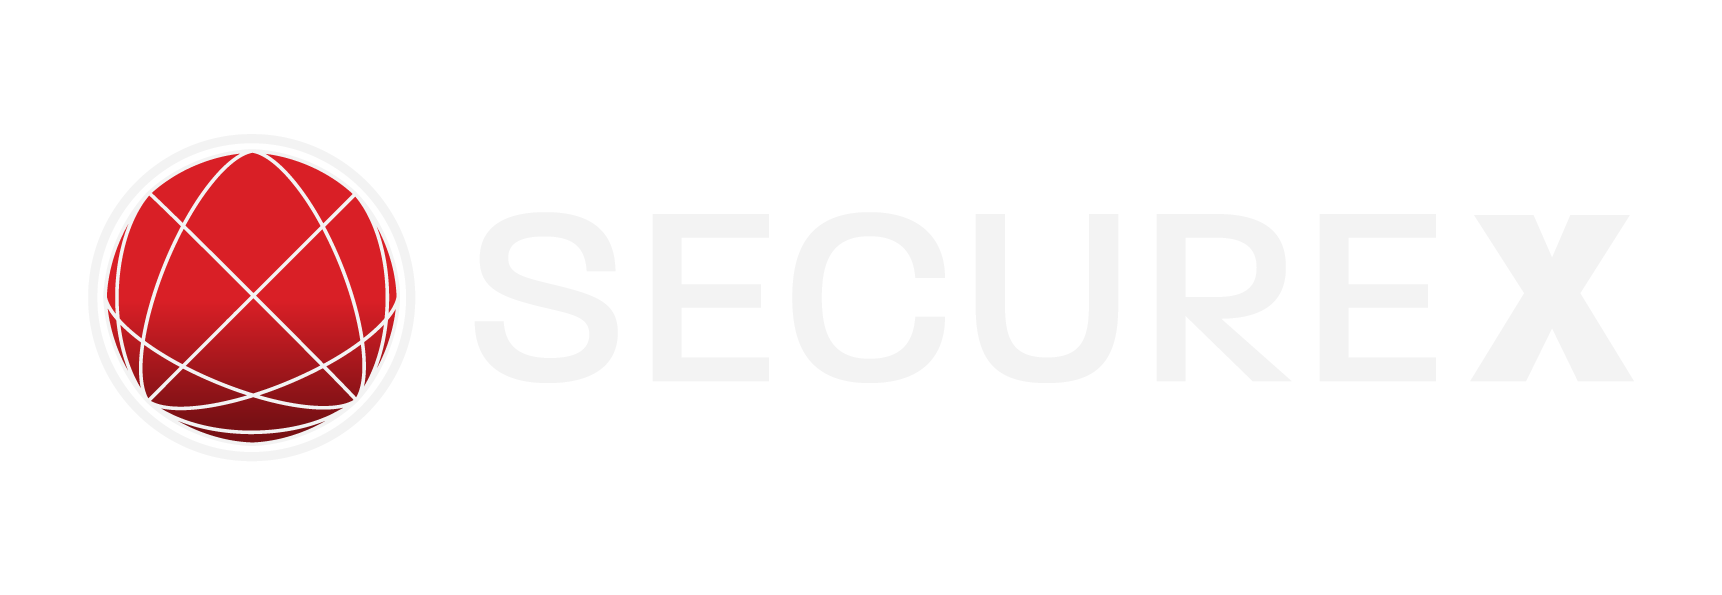 SecureX